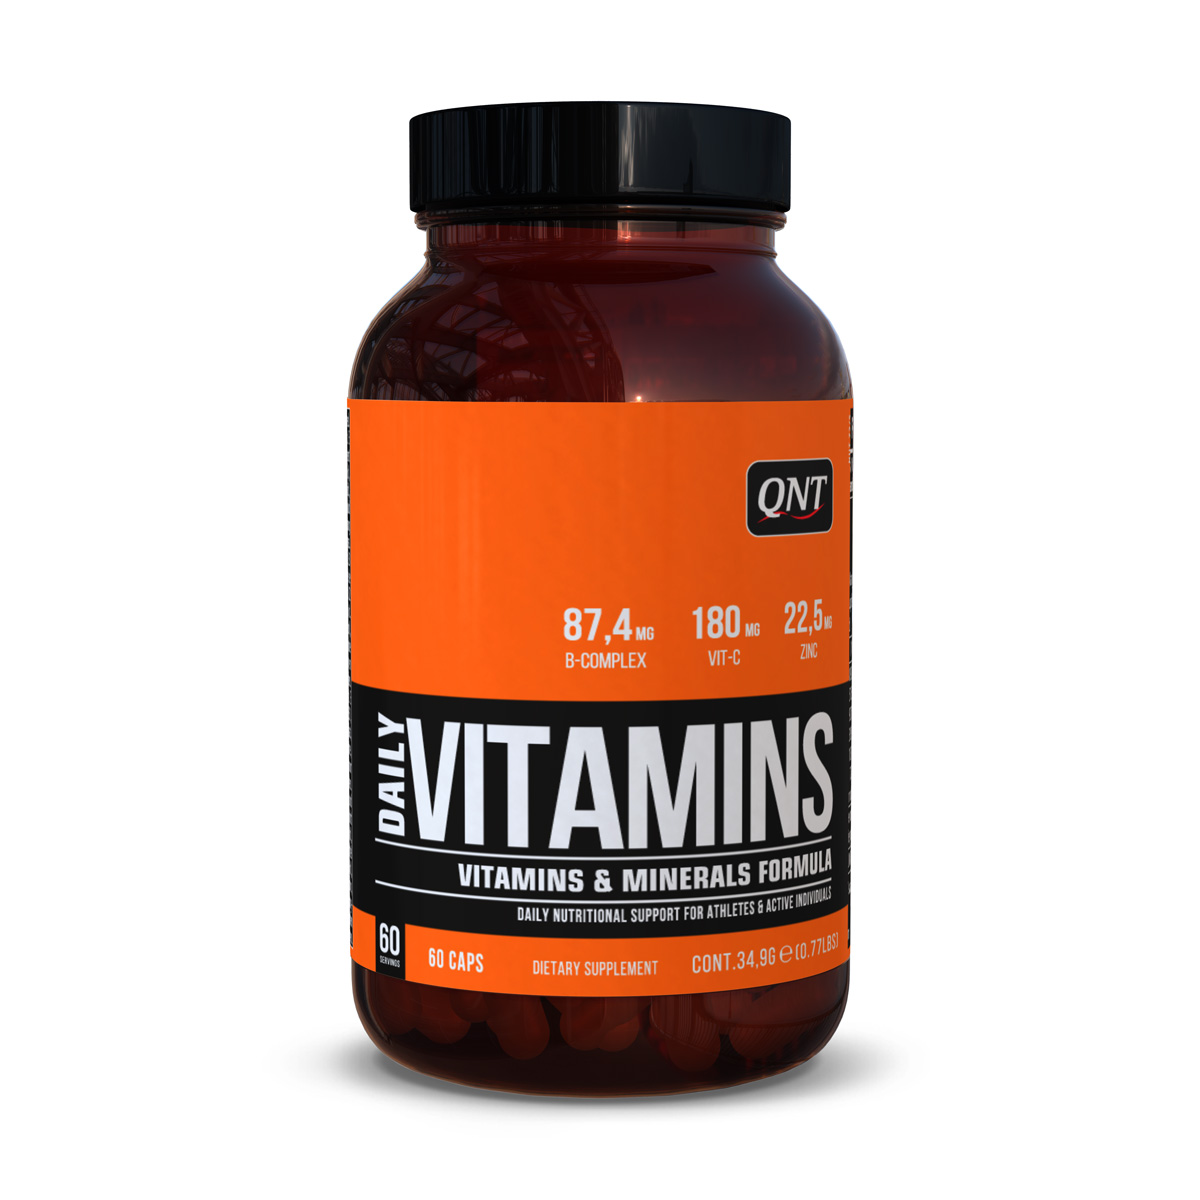 Vitamine & Minerale - DAILY VITAMINS 60 capsule
, advancednutrition.ro